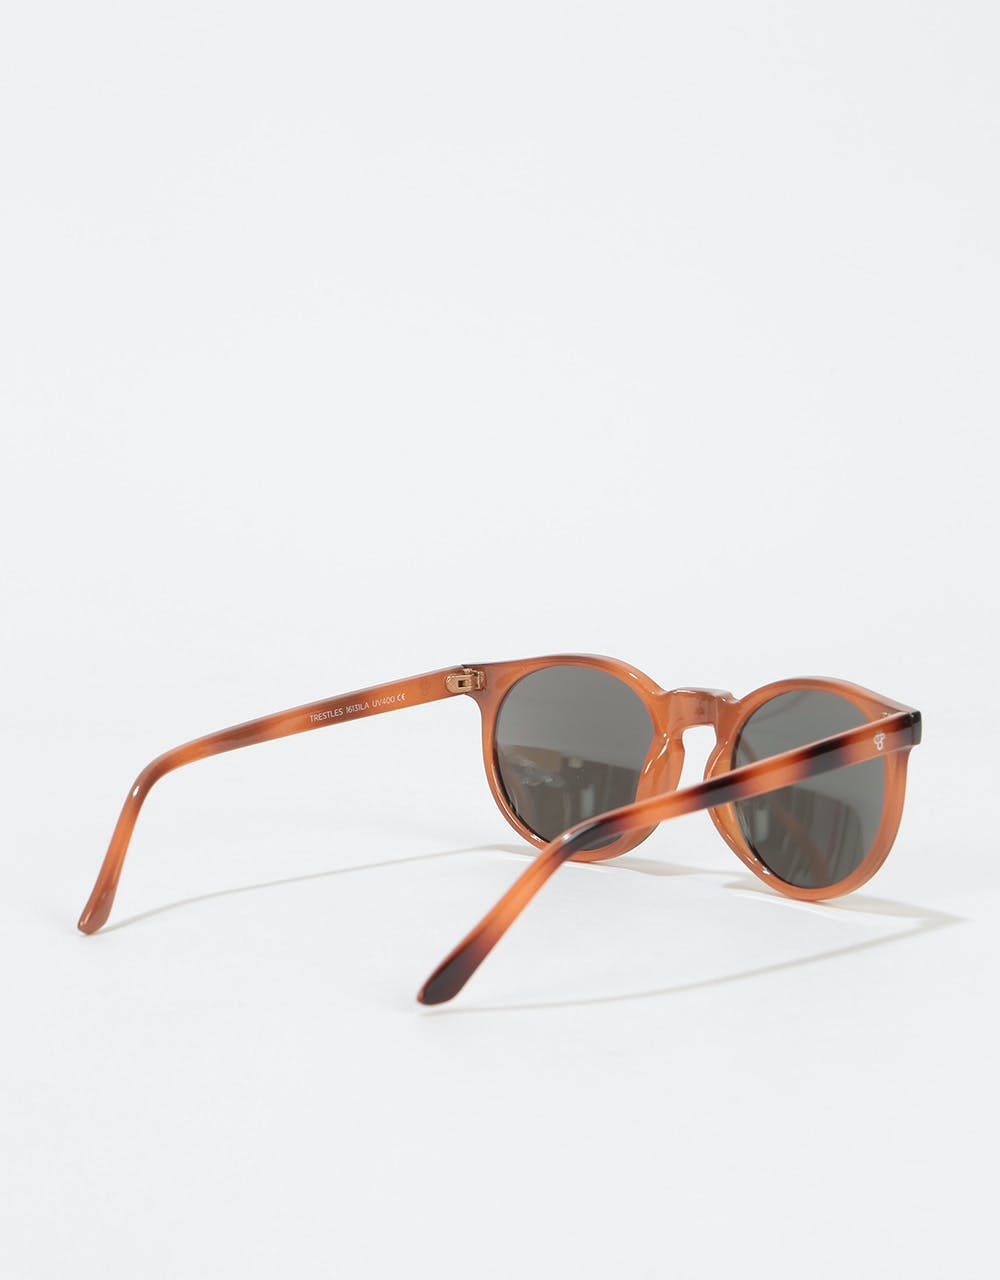 CHPO Trestles Sunglasses - Brown/Silver Mirror